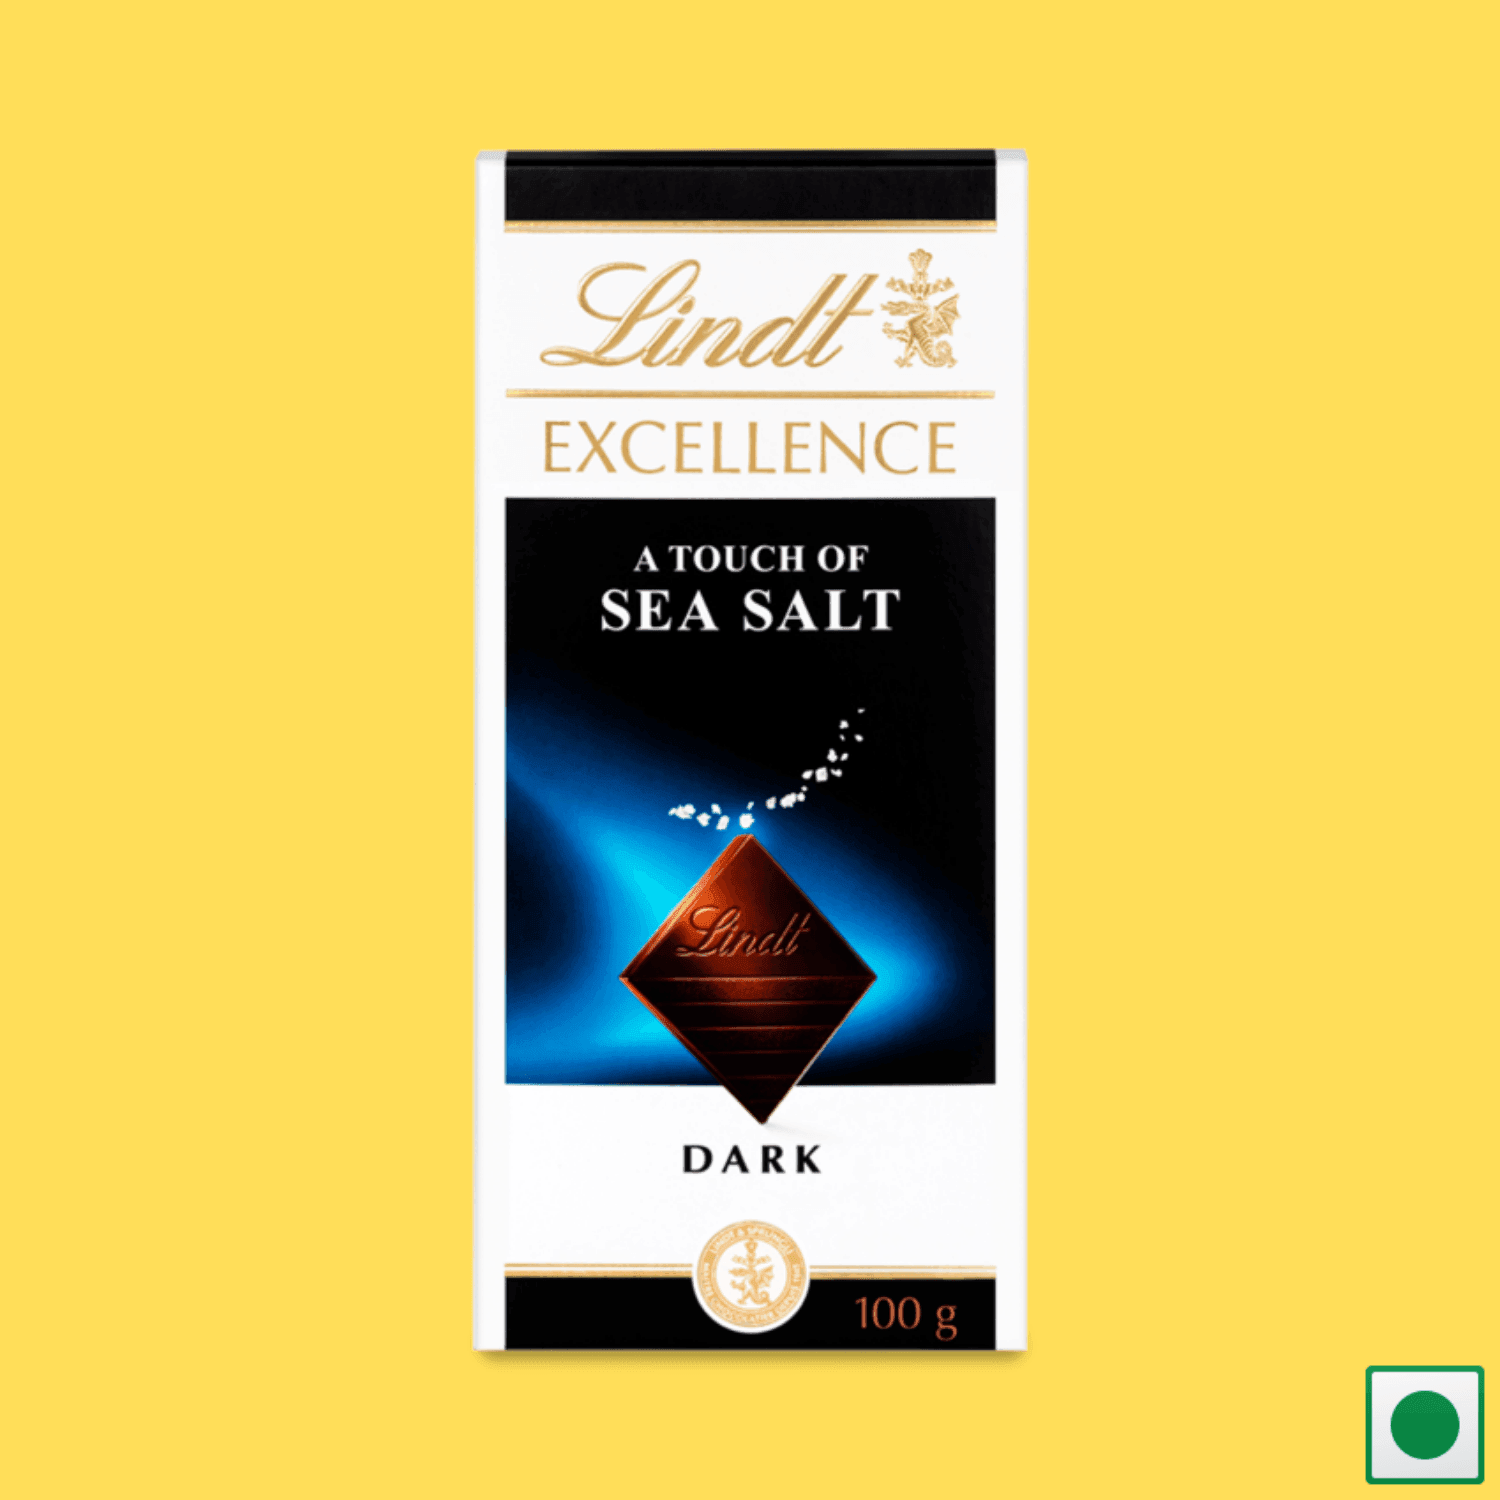 Lindt Excellence Dark Sea Salt Bar, 100g (Imported) - Super 7 Mart